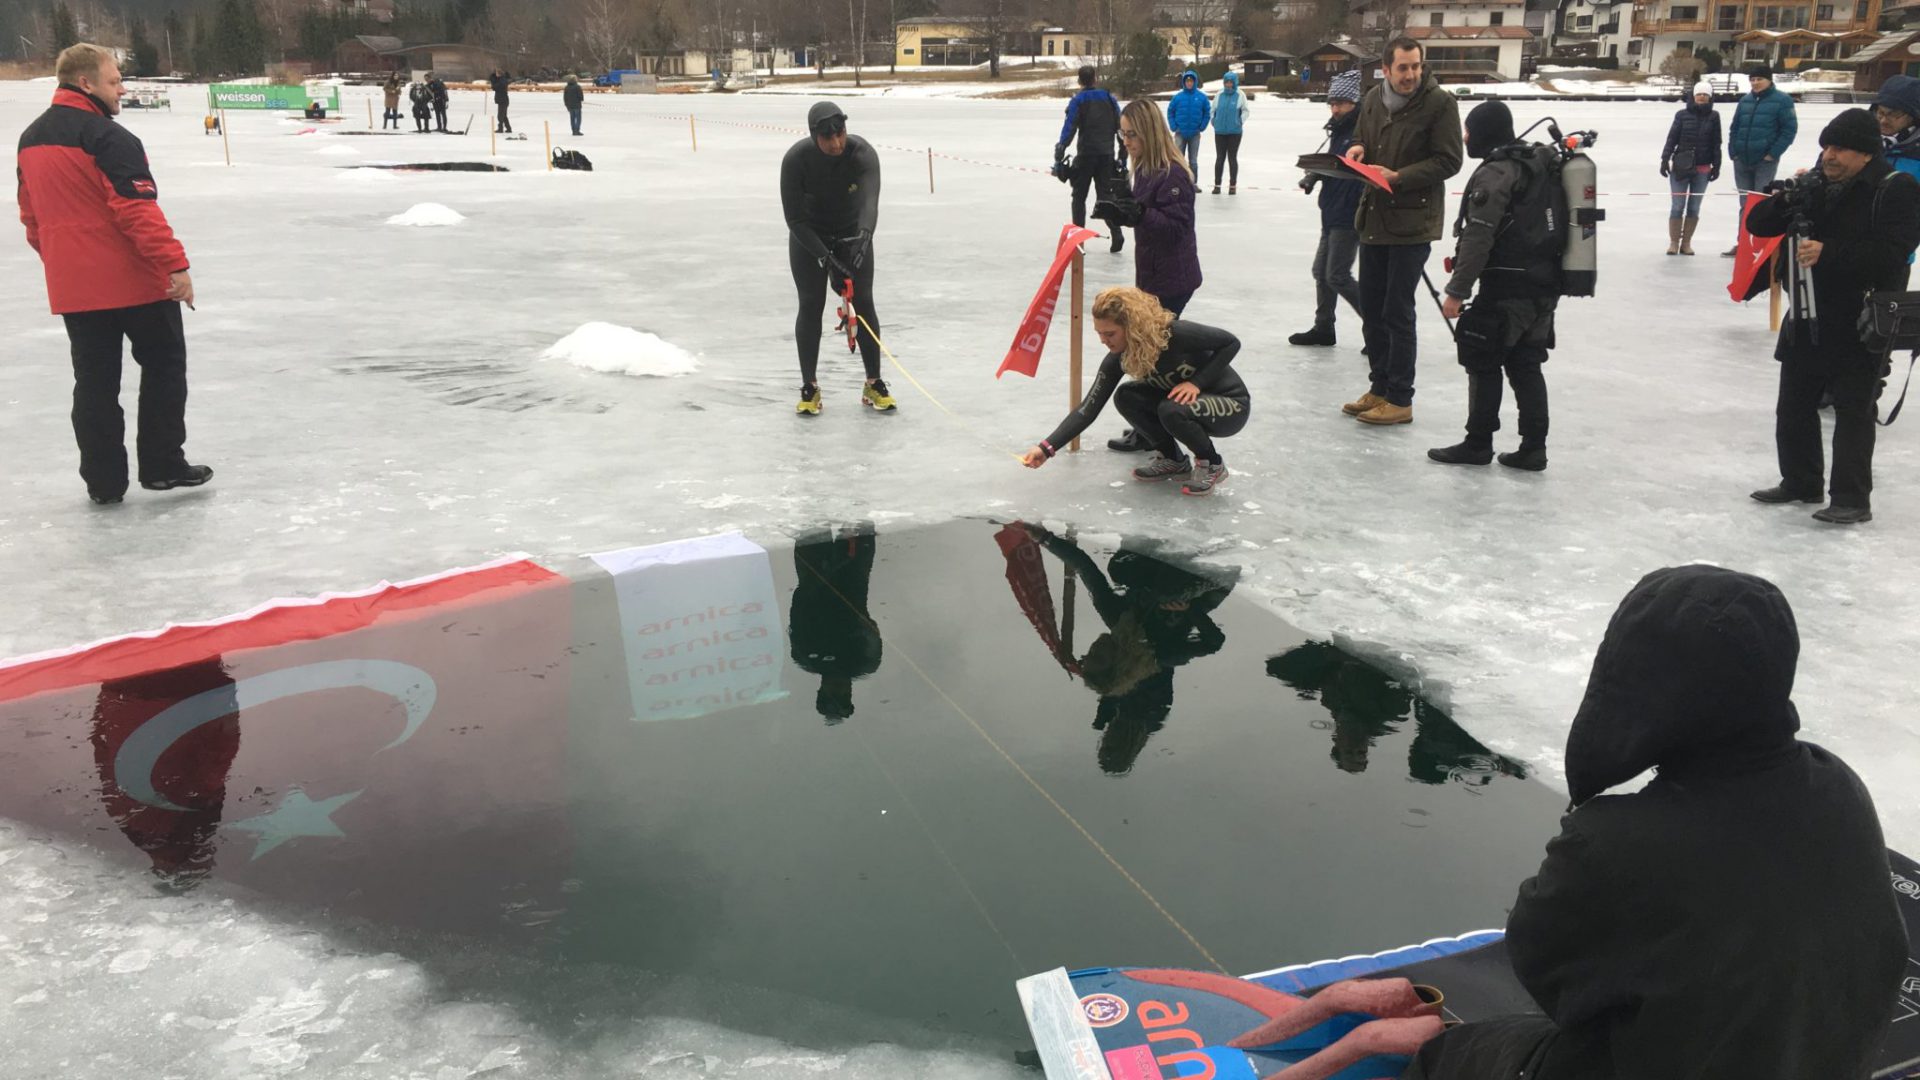 Apnoe-Weltrekord im Streckentauchen unter Eis: Die türkische Fahne wurde im Loch im Eis gehisst.